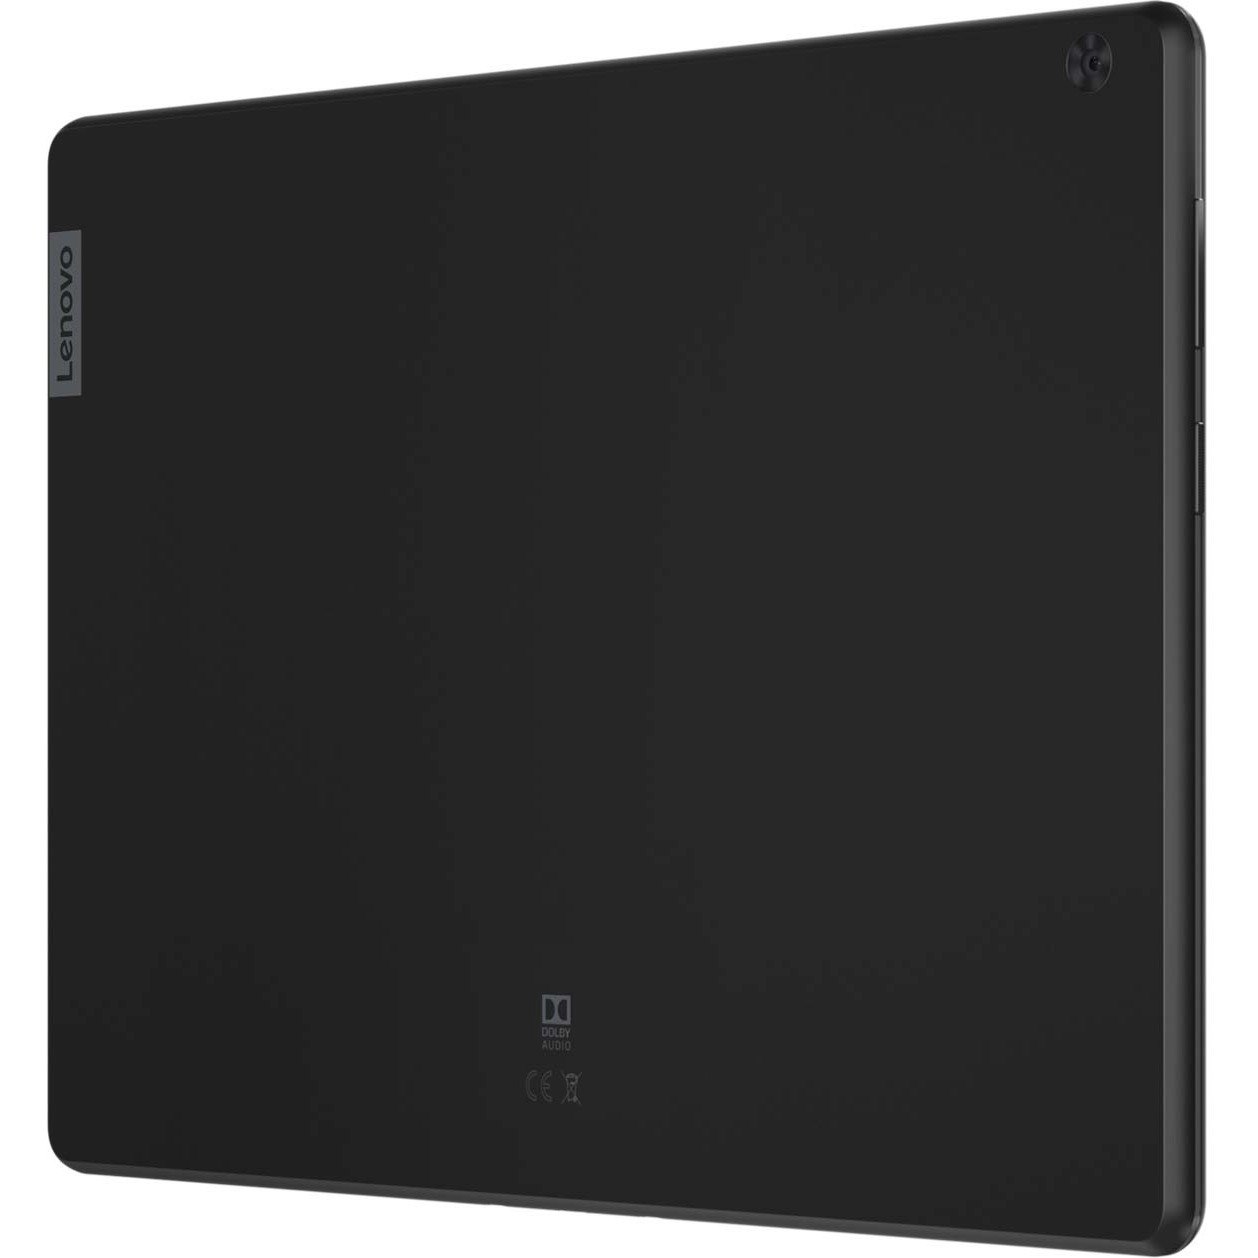 Lenovo Tab M10 TB-X505F Tablet - 10.1" - Qualcomm Snapdragon 429 - 2 GB - 16 GB Storage - Android 9.0 Pie - Slate Black